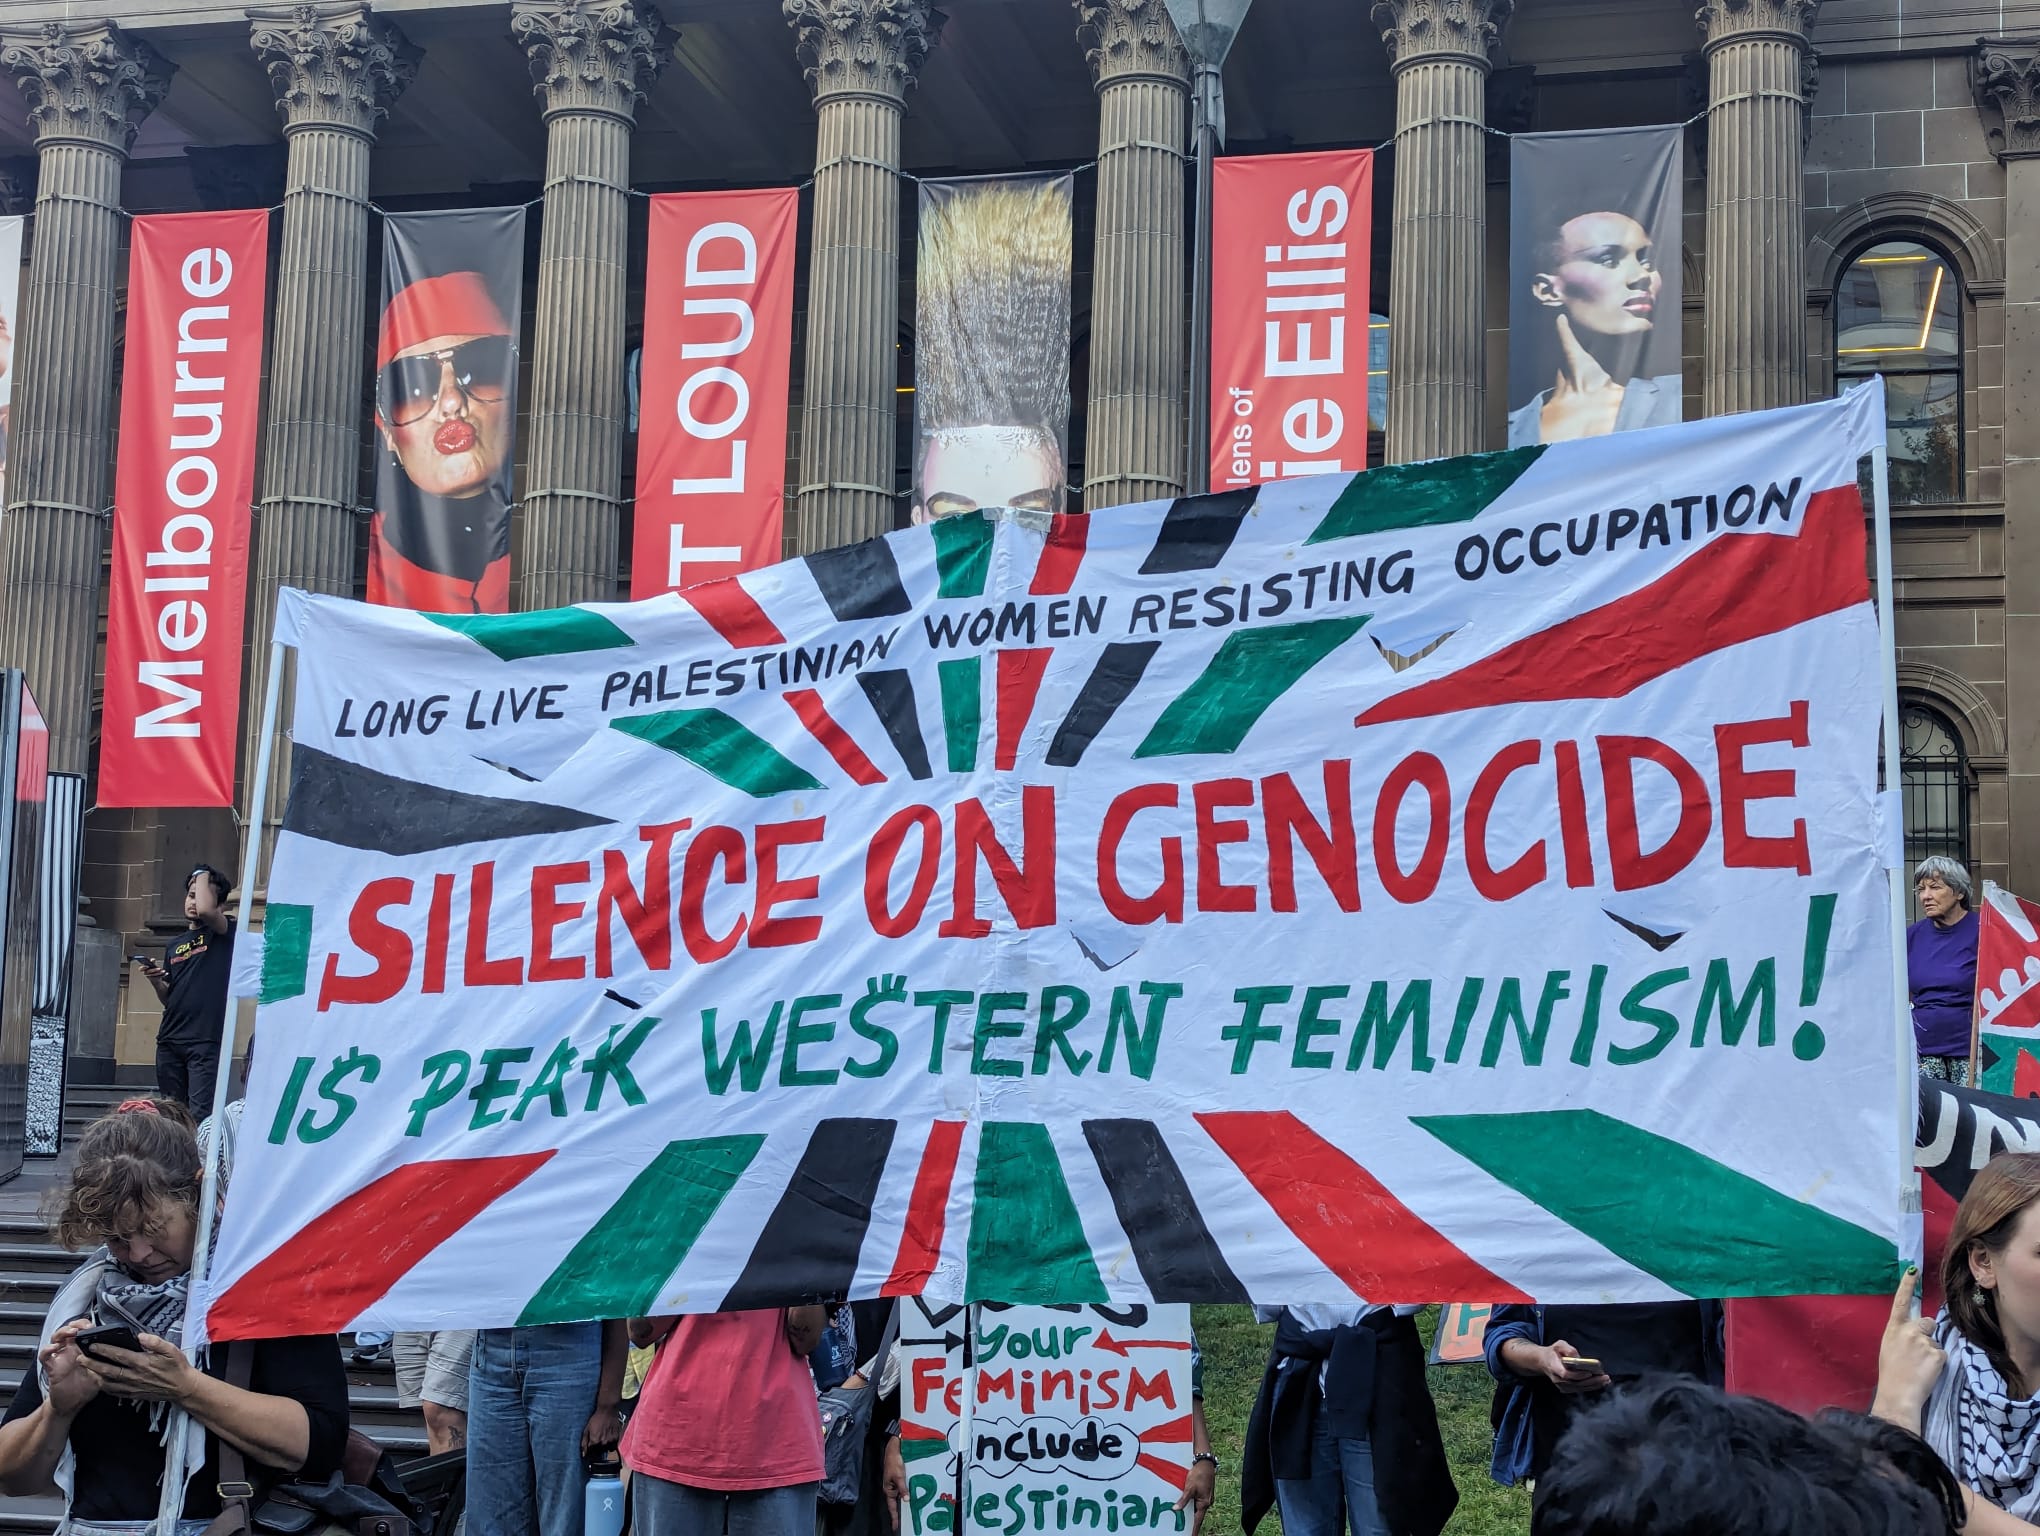 'Silence on genocide is peak western feminism'